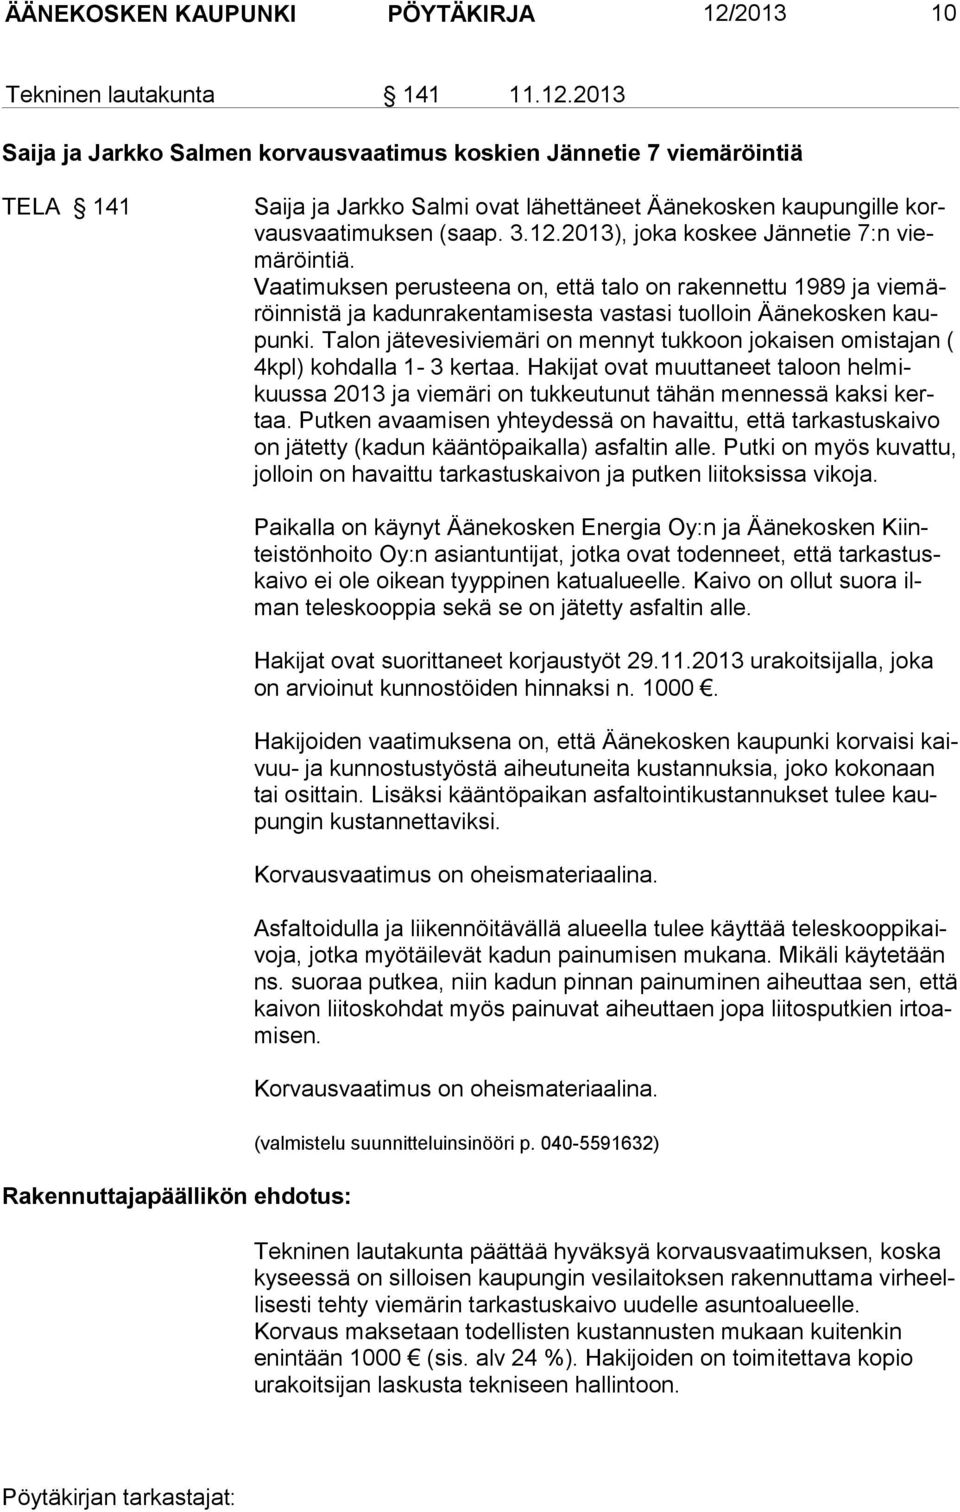 2013 Saija ja Jarkko Salmen korvausvaatimus koskien Jännetie 7 viemäröintiä TELA 141 Saija ja Jarkko Salmi ovat lähettäneet Äänekosken kaupungille korvausvaatimuksen (saap. 3.12.